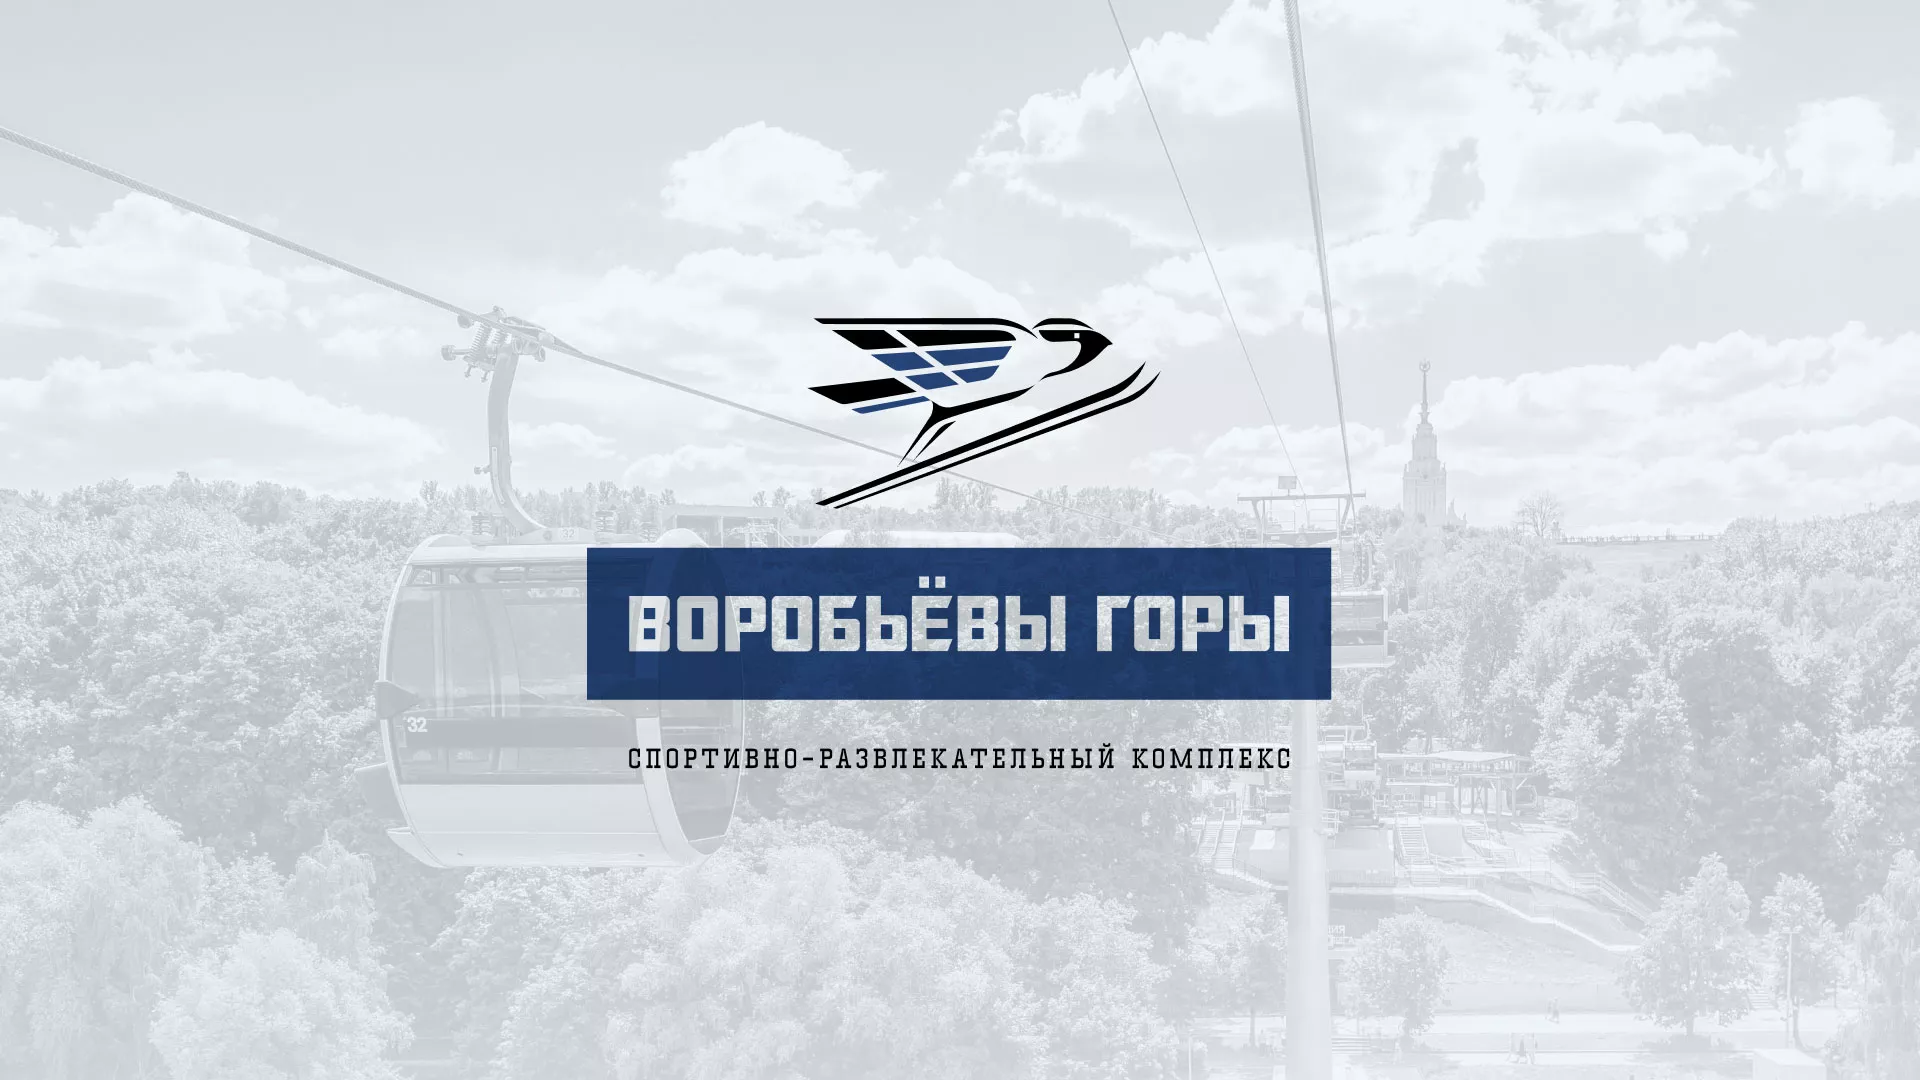 Разработка сайта в Новоульяновске для спортивно-развлекательного комплекса «Воробьёвы горы»